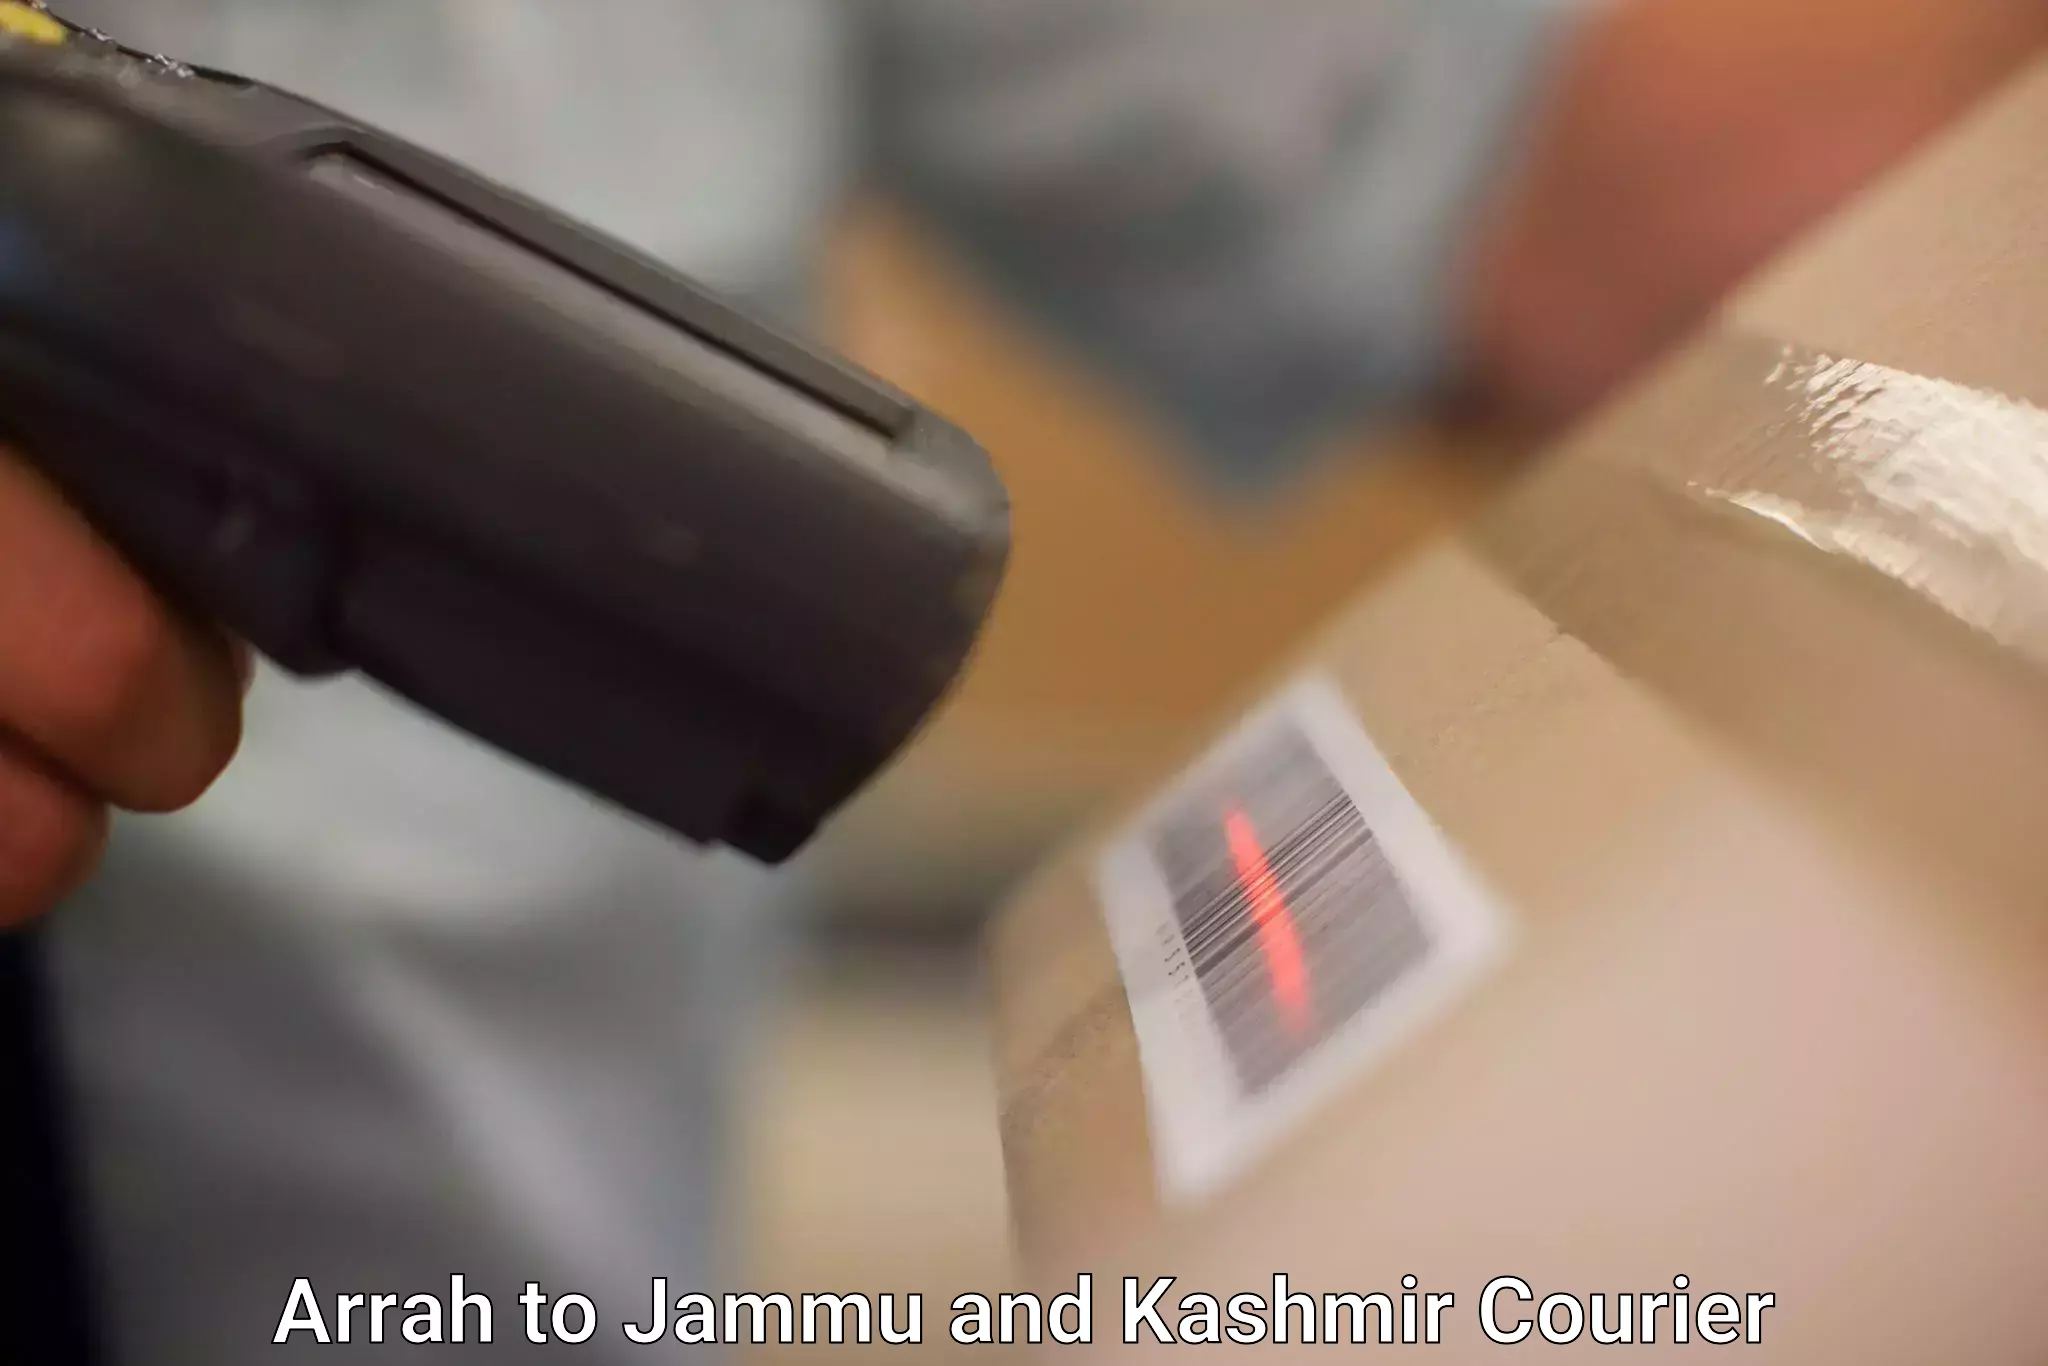 User-friendly delivery service Arrah to Kargil